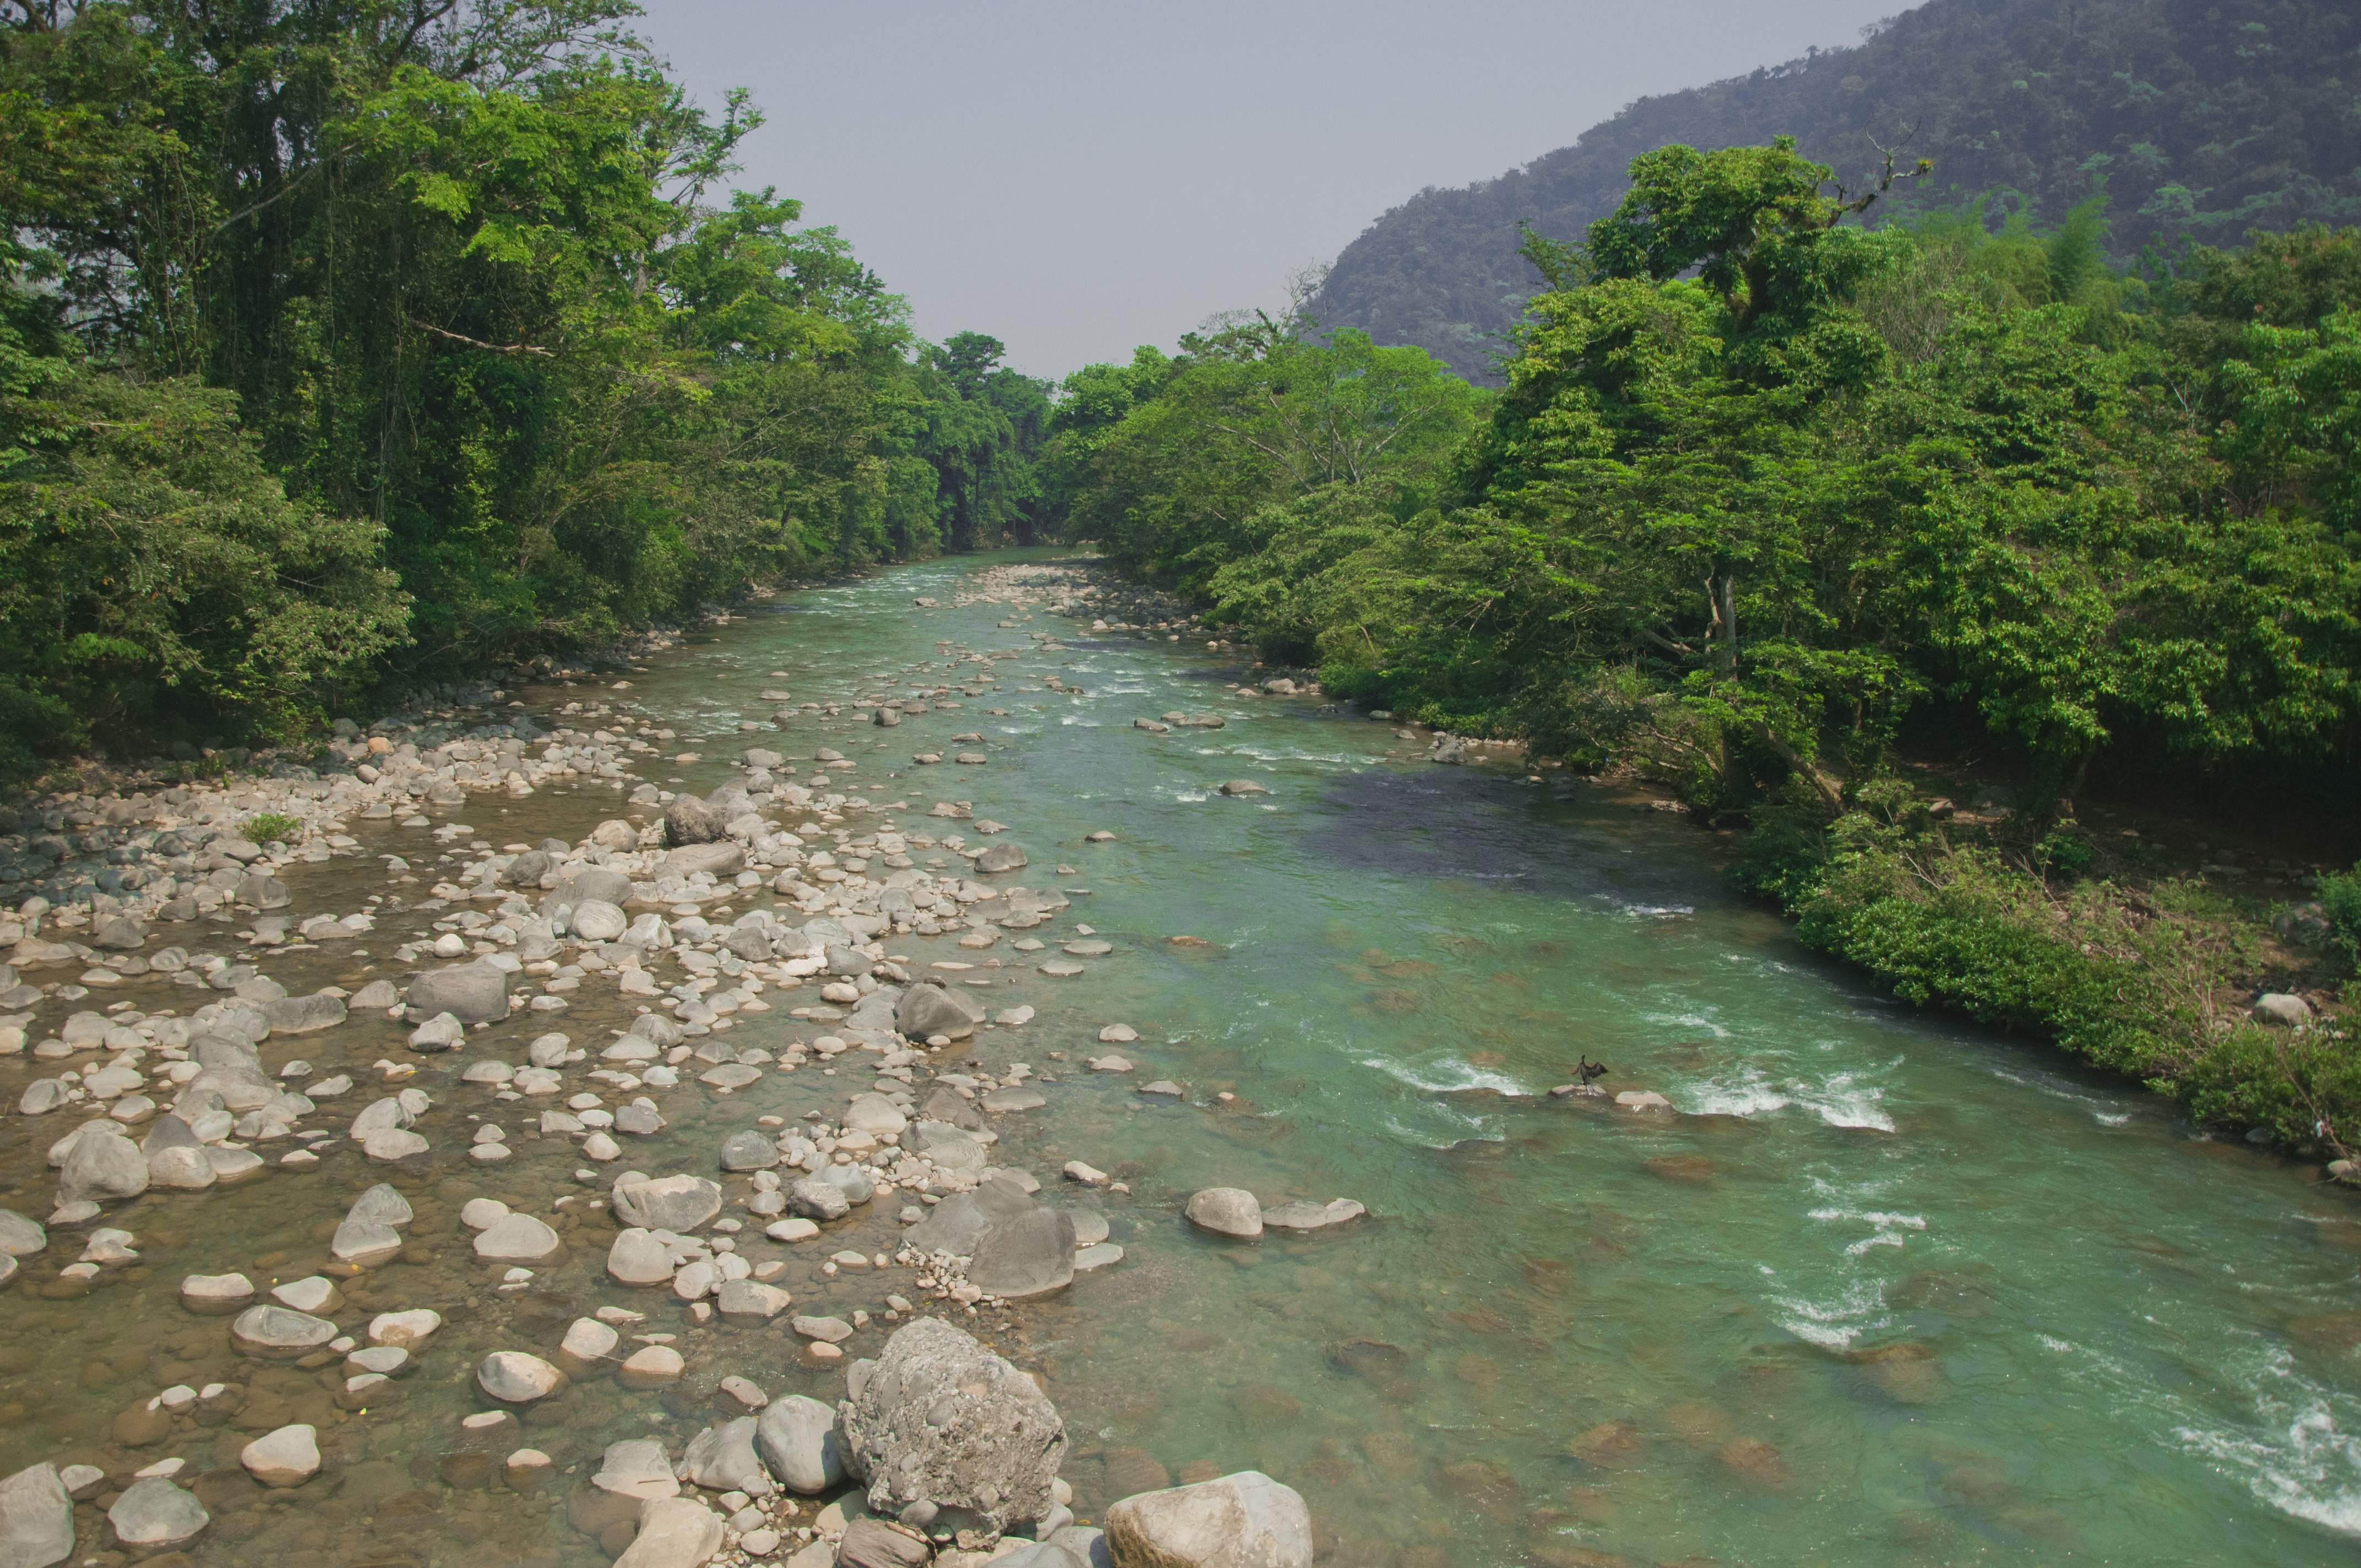 Cambio de uso de suelo y sus efectos sobre ecosistemas fluviales en la cuenca baja del Grijalva